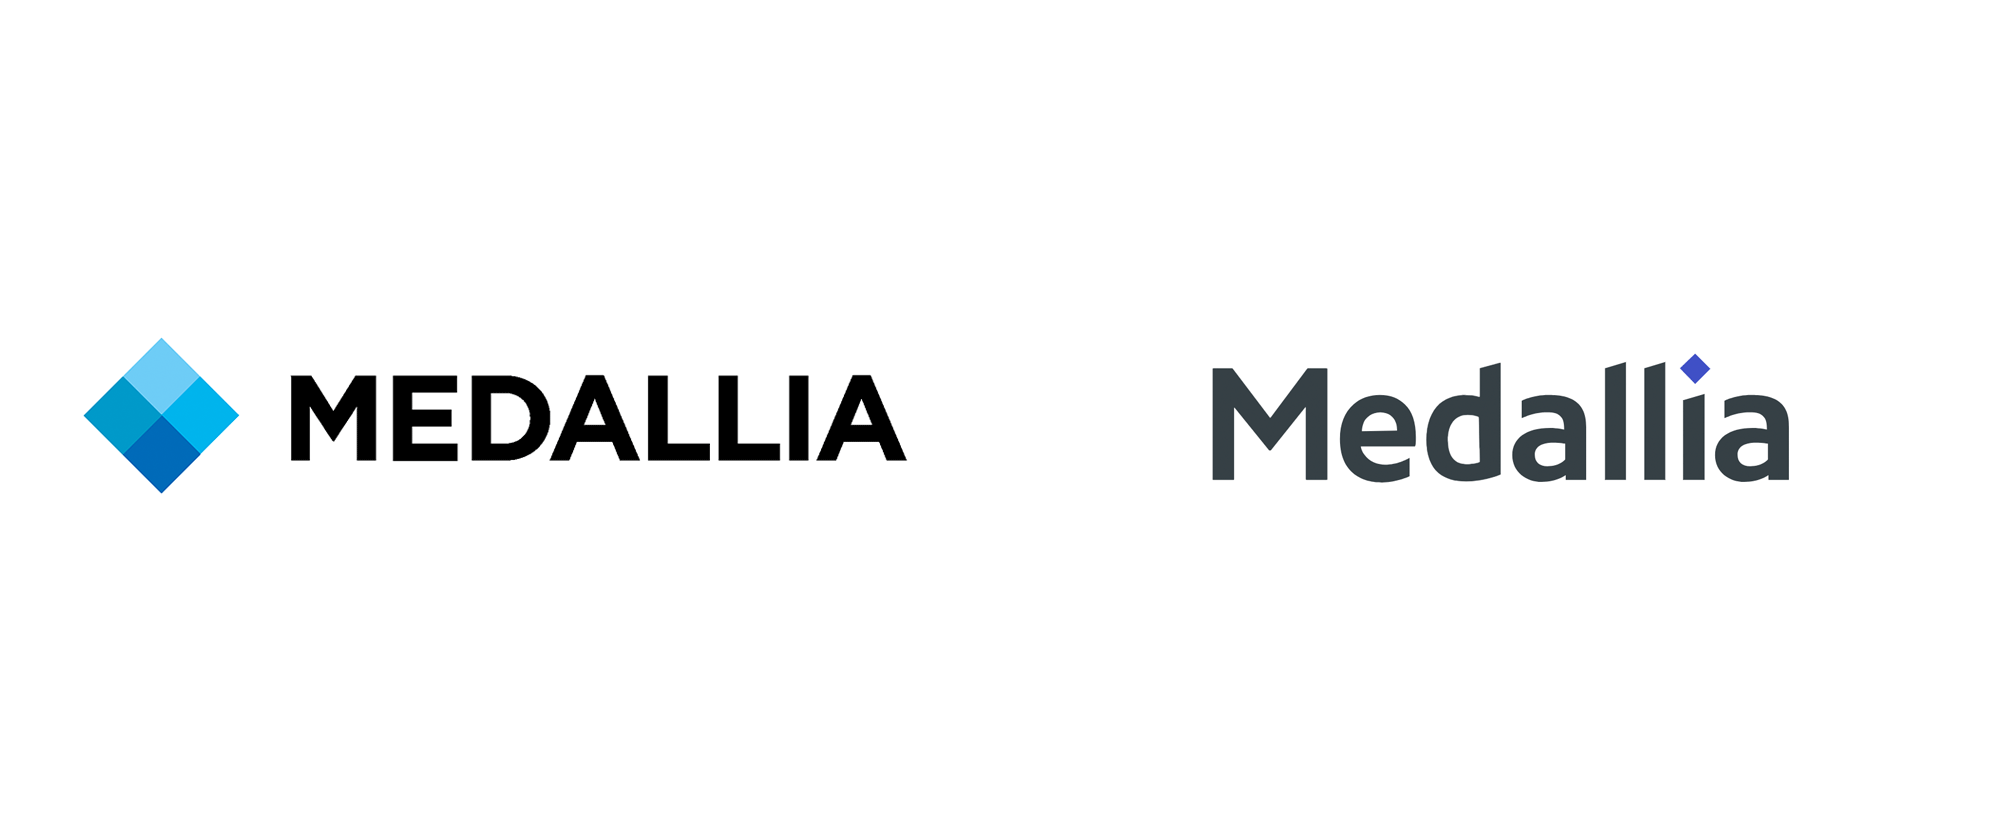 Medallia Logo - Brand New: New Logo for Medallia